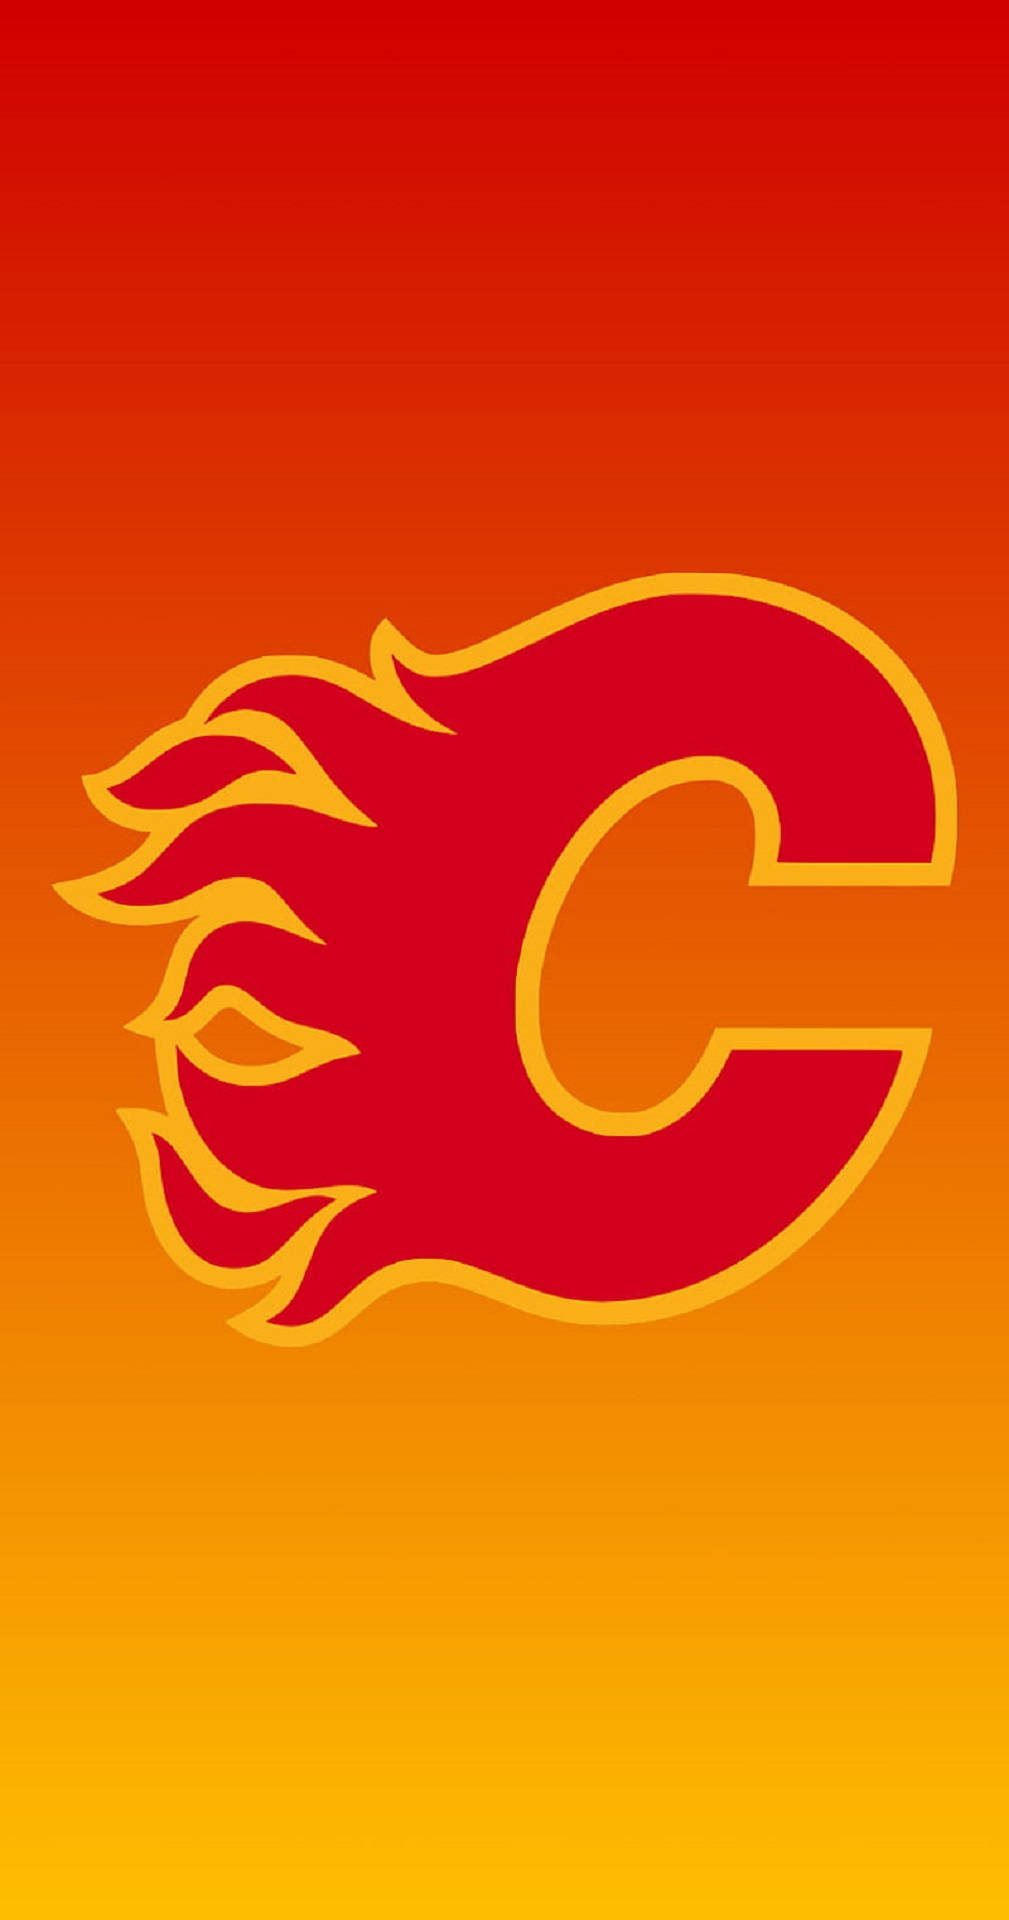 Temaamarillo Del Logo De Los Calgary Flames Fondo de pantalla